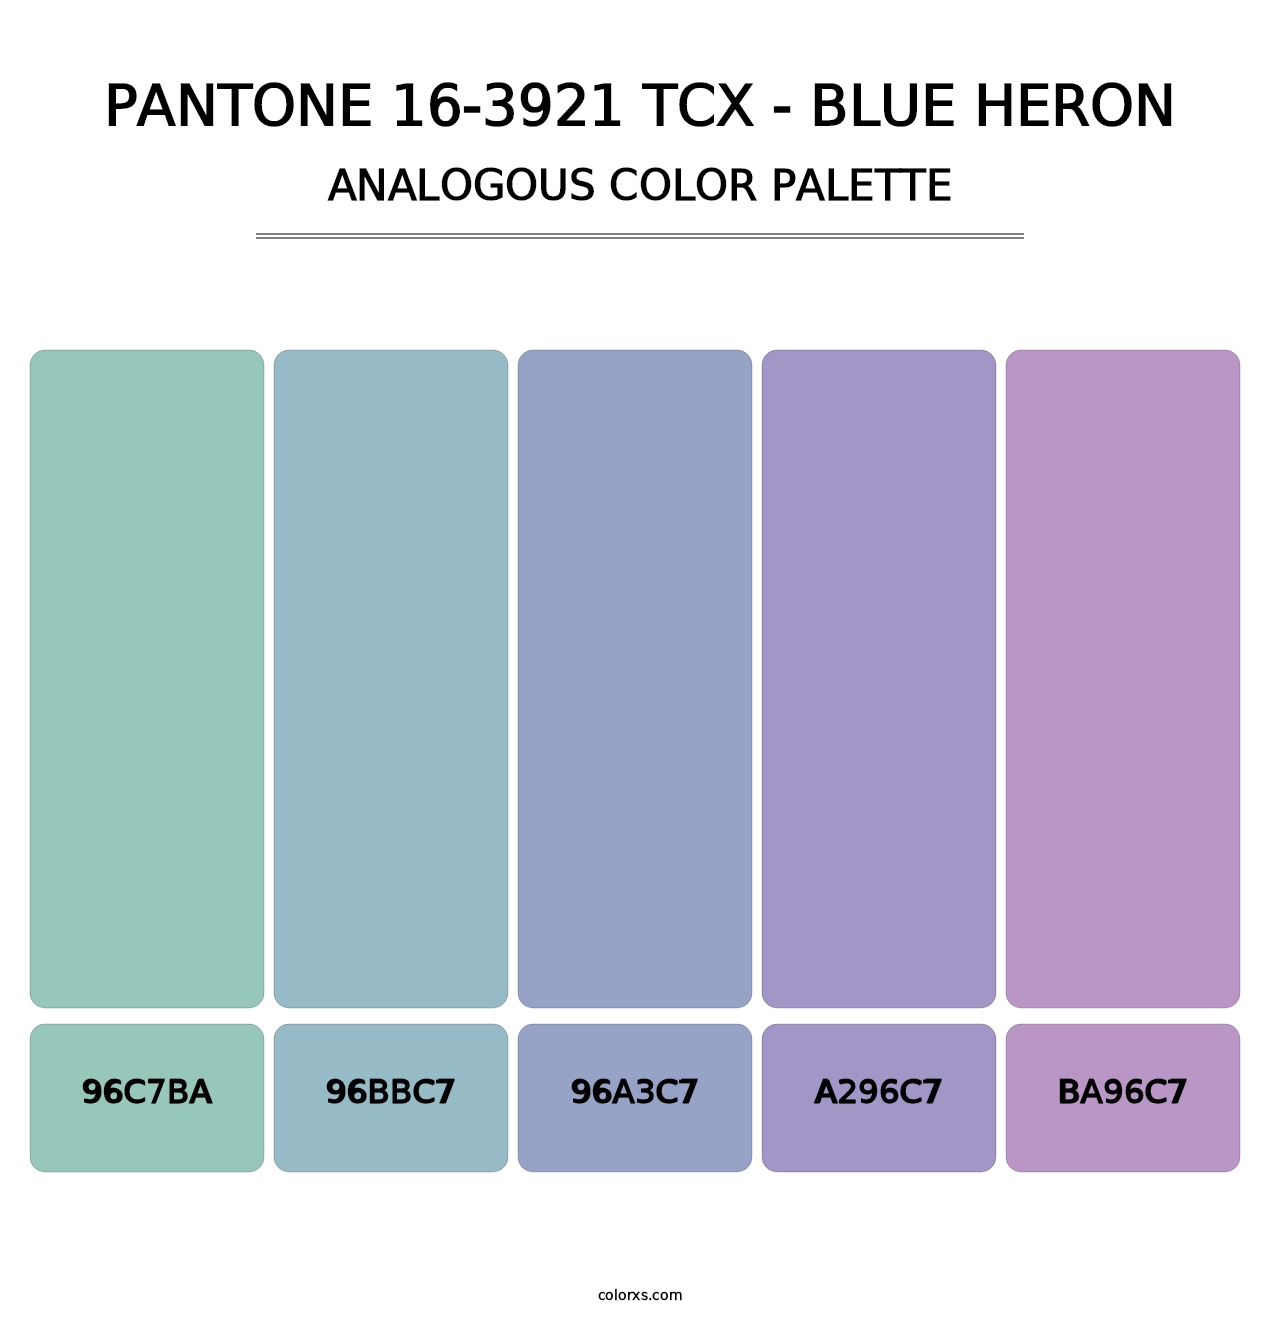 PANTONE 16-3921 TCX - Blue Heron - Analogous Color Palette